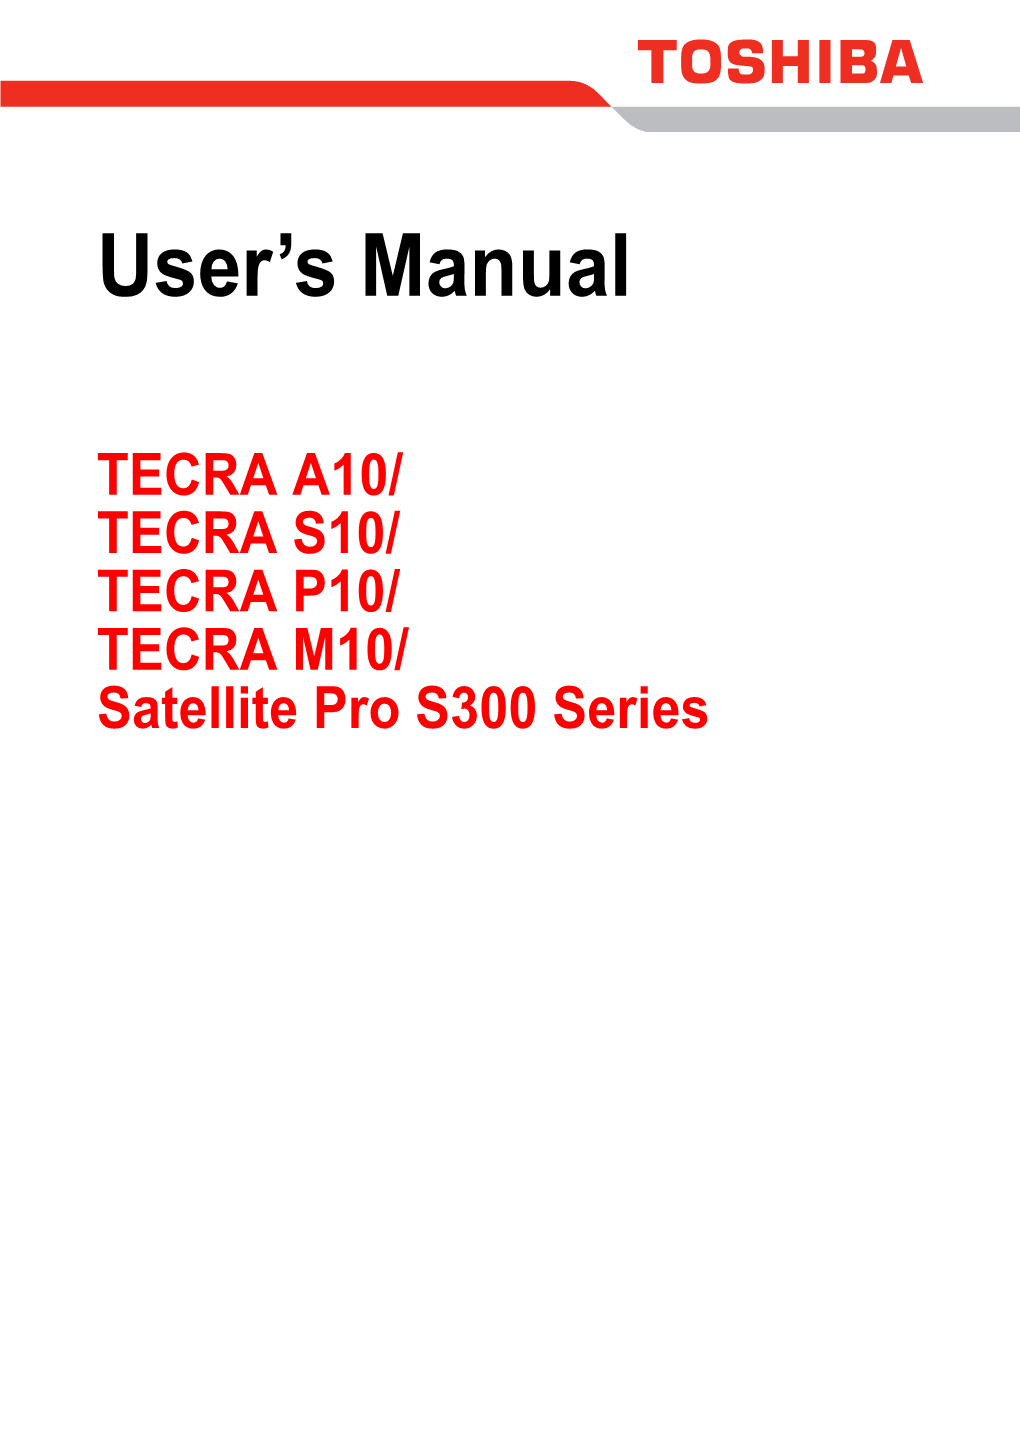 User's Manual (This Manual)